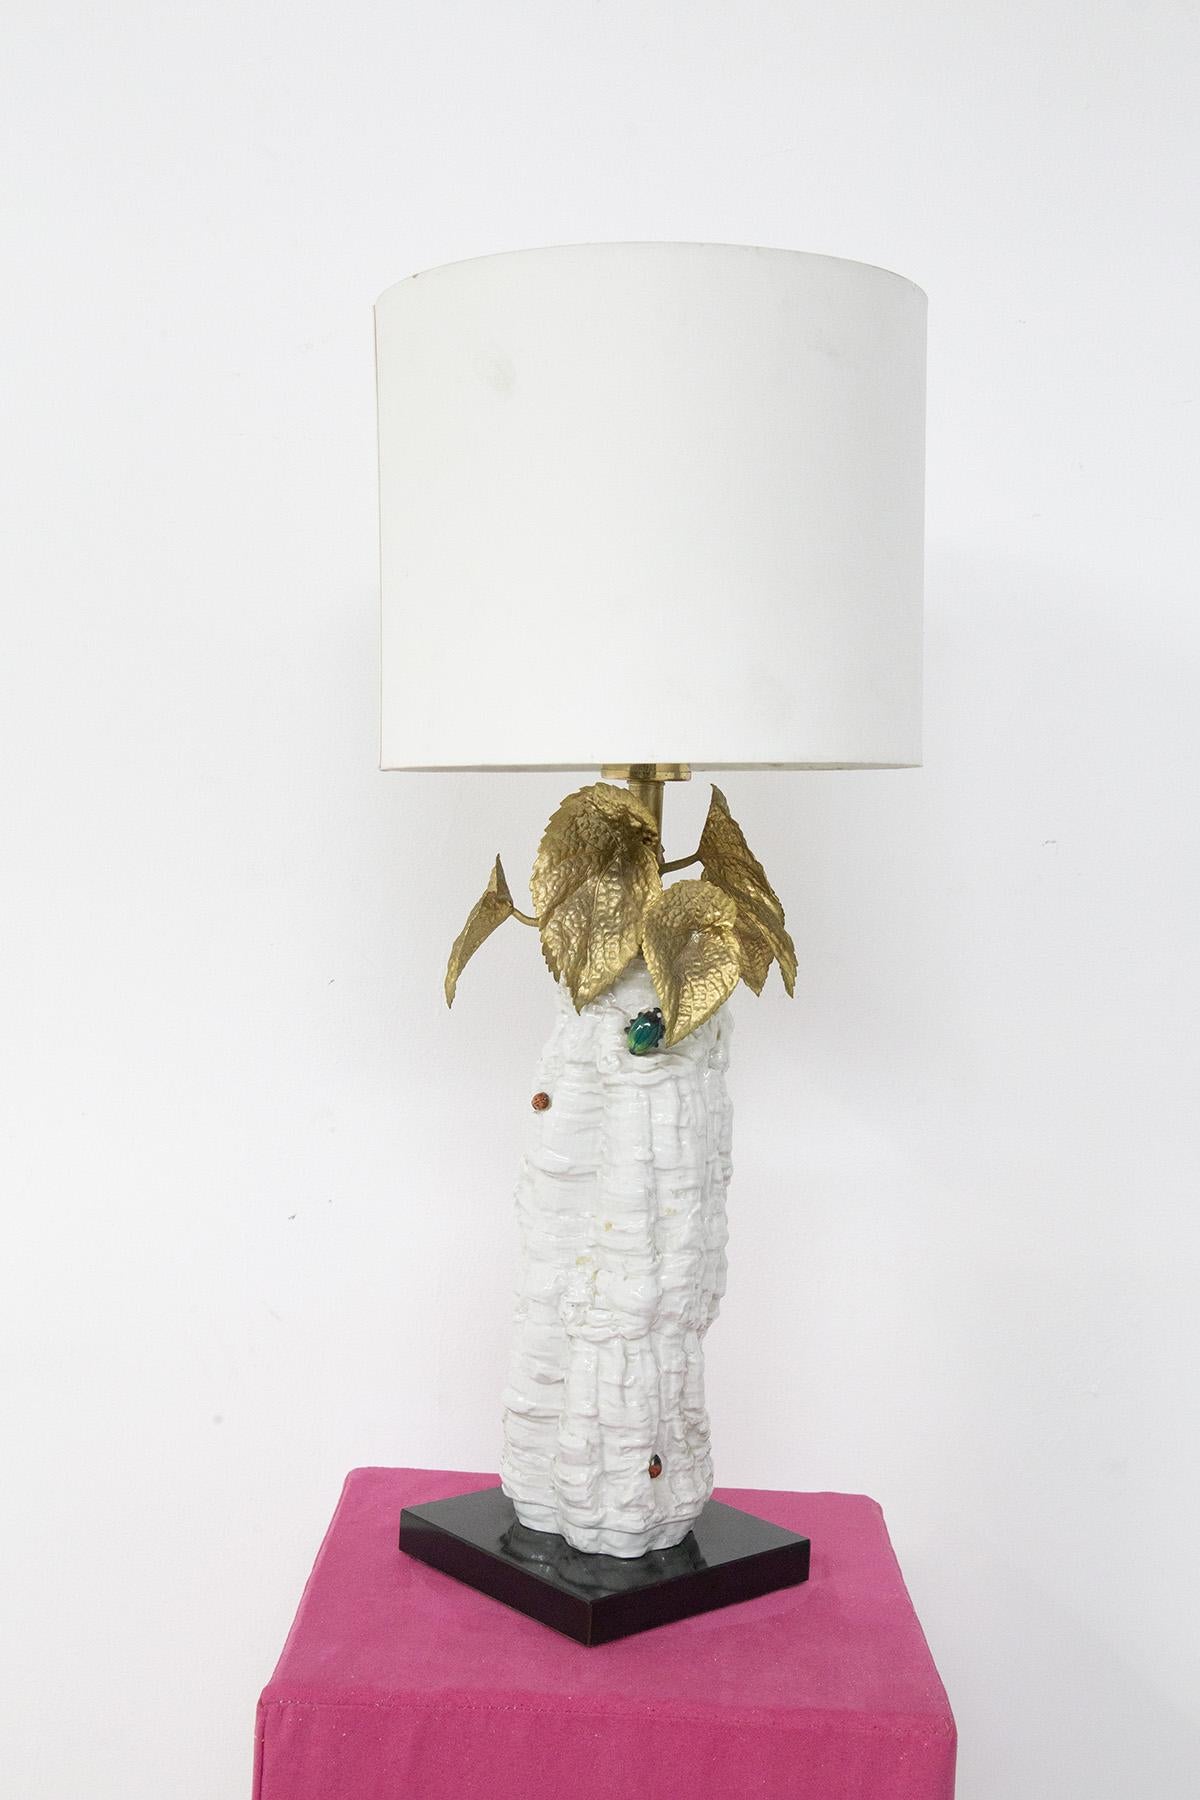 Lampe de table italienne élégante et glamour fabriquée dans les années 1970. La lampe est un élément décoratif très glamour et unique, réalisé avec un corps en céramique blanche et avec de petites applications, toujours en céramique, de petits